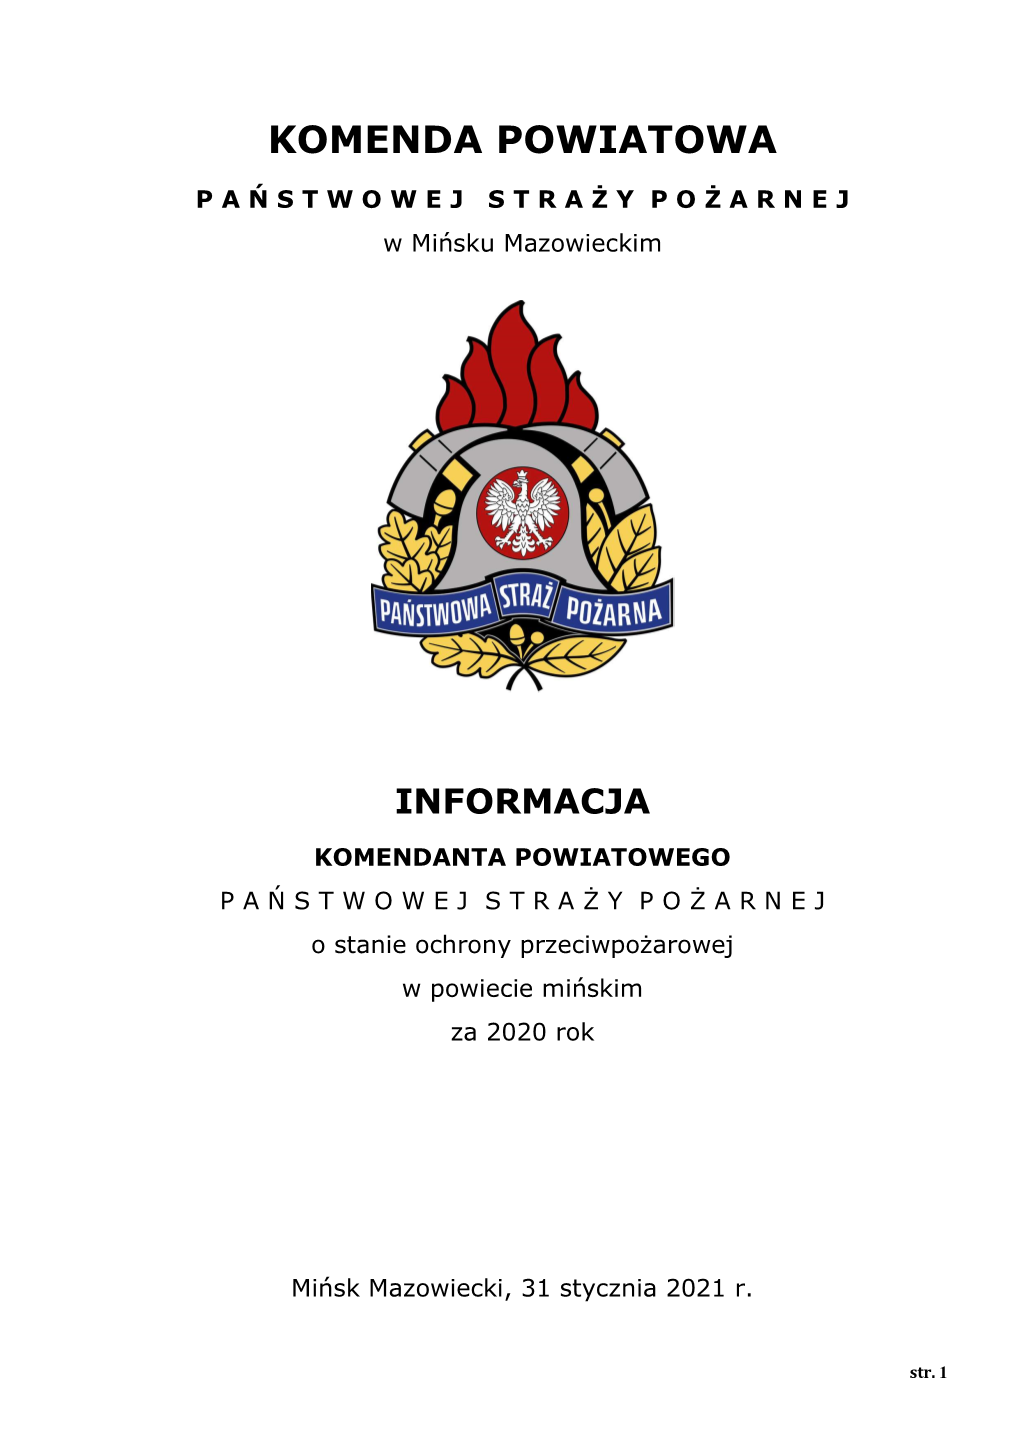 Komenda Powiatowa